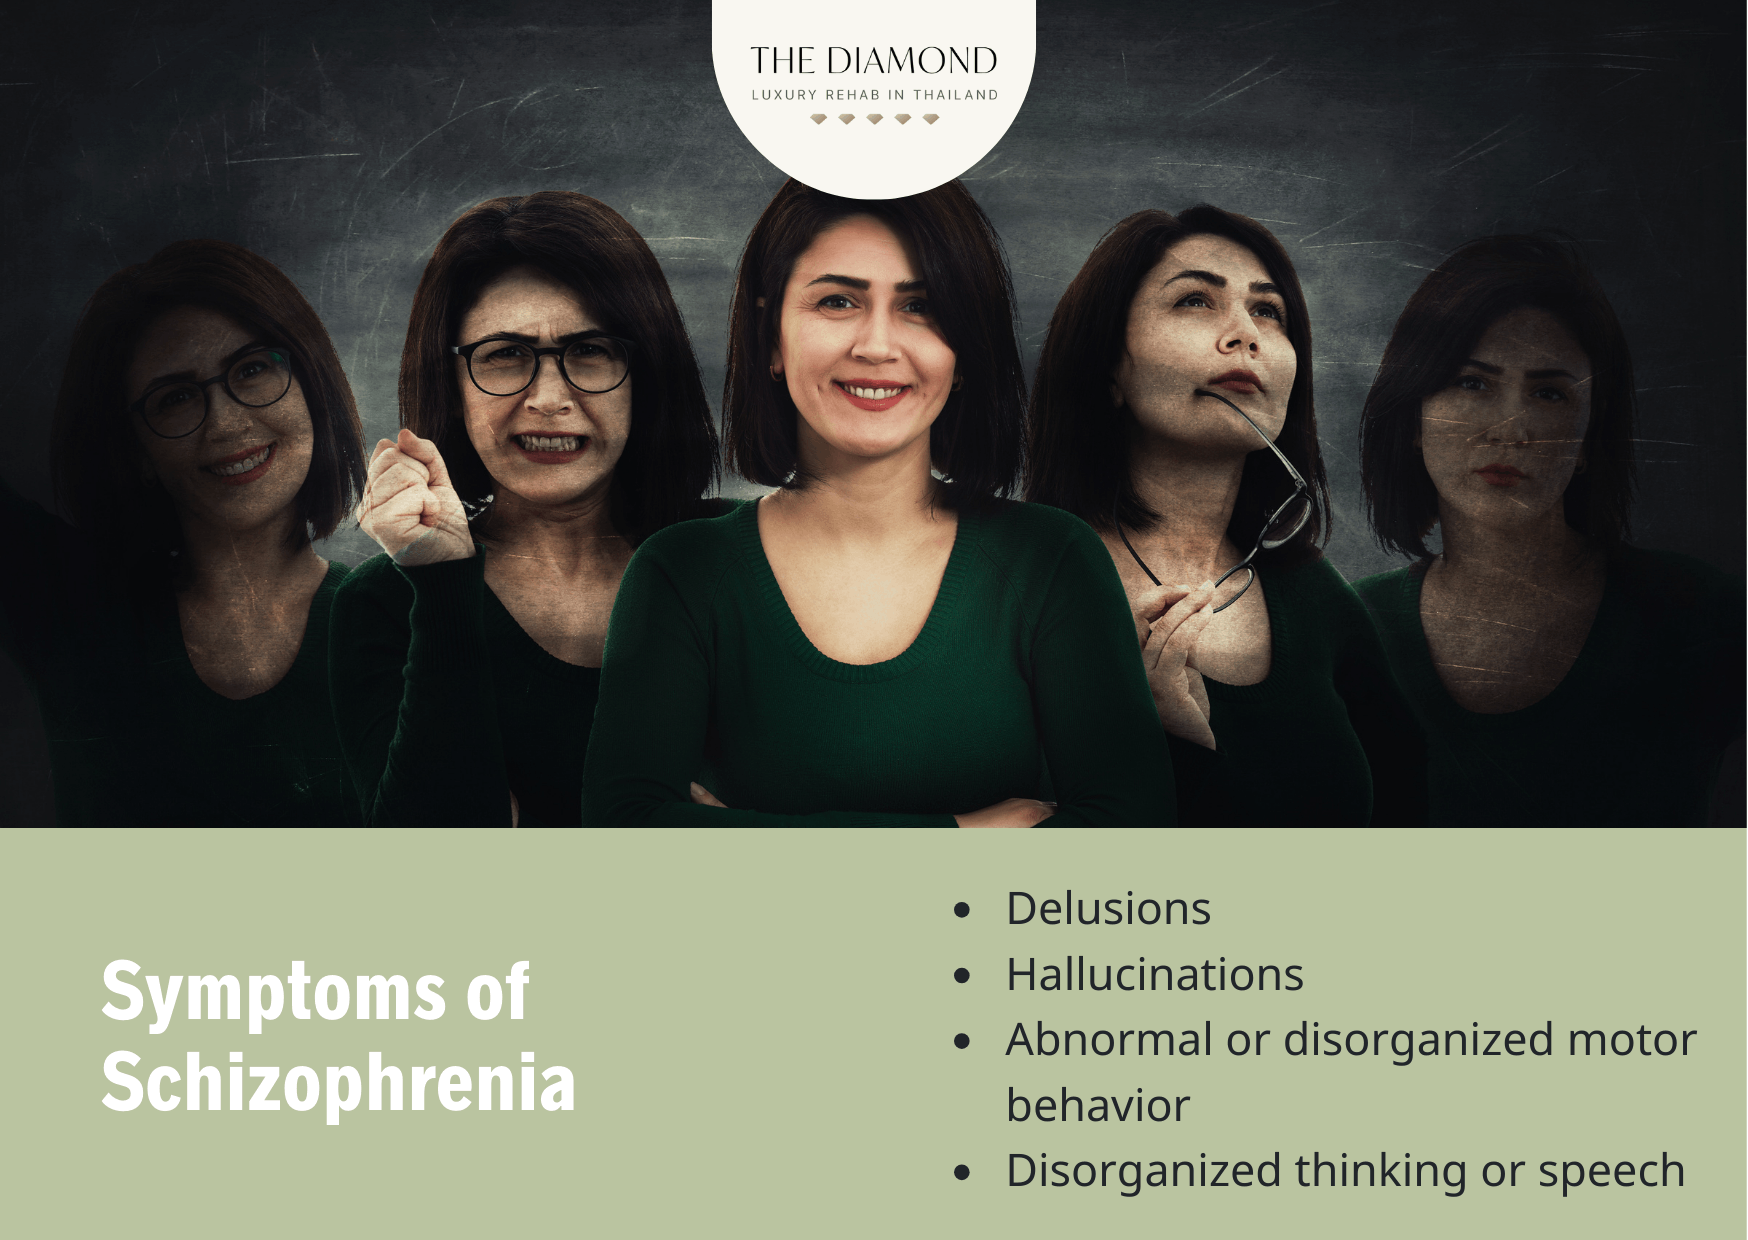 Schizophrenia symptoms